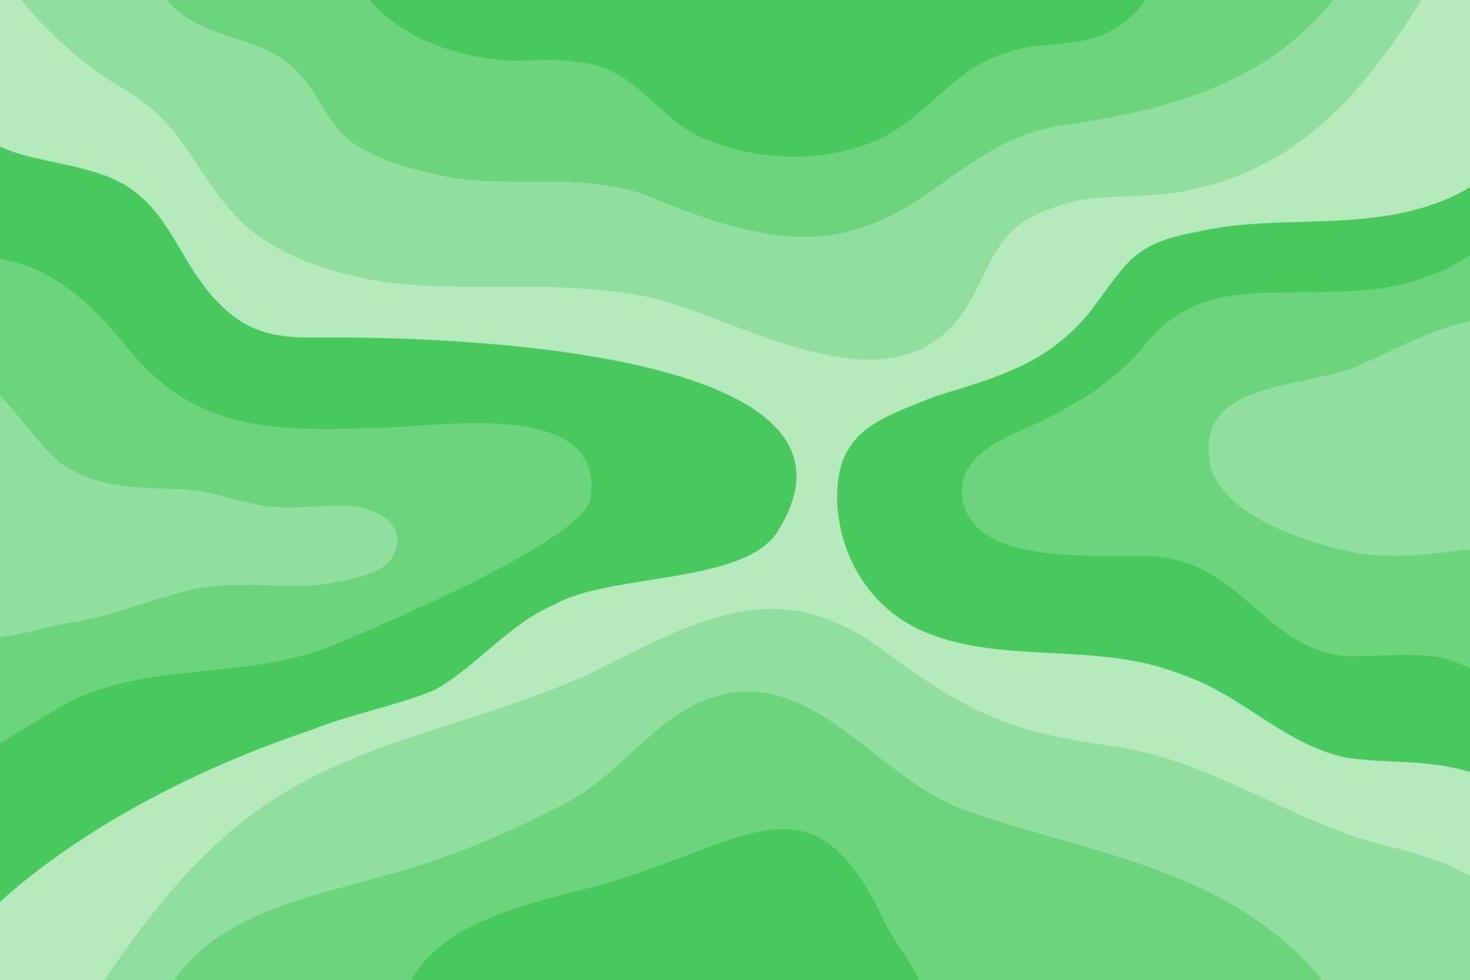 künstlerischer abstrakter hintergrund mit grüner farbverlaufsfarbe vektor